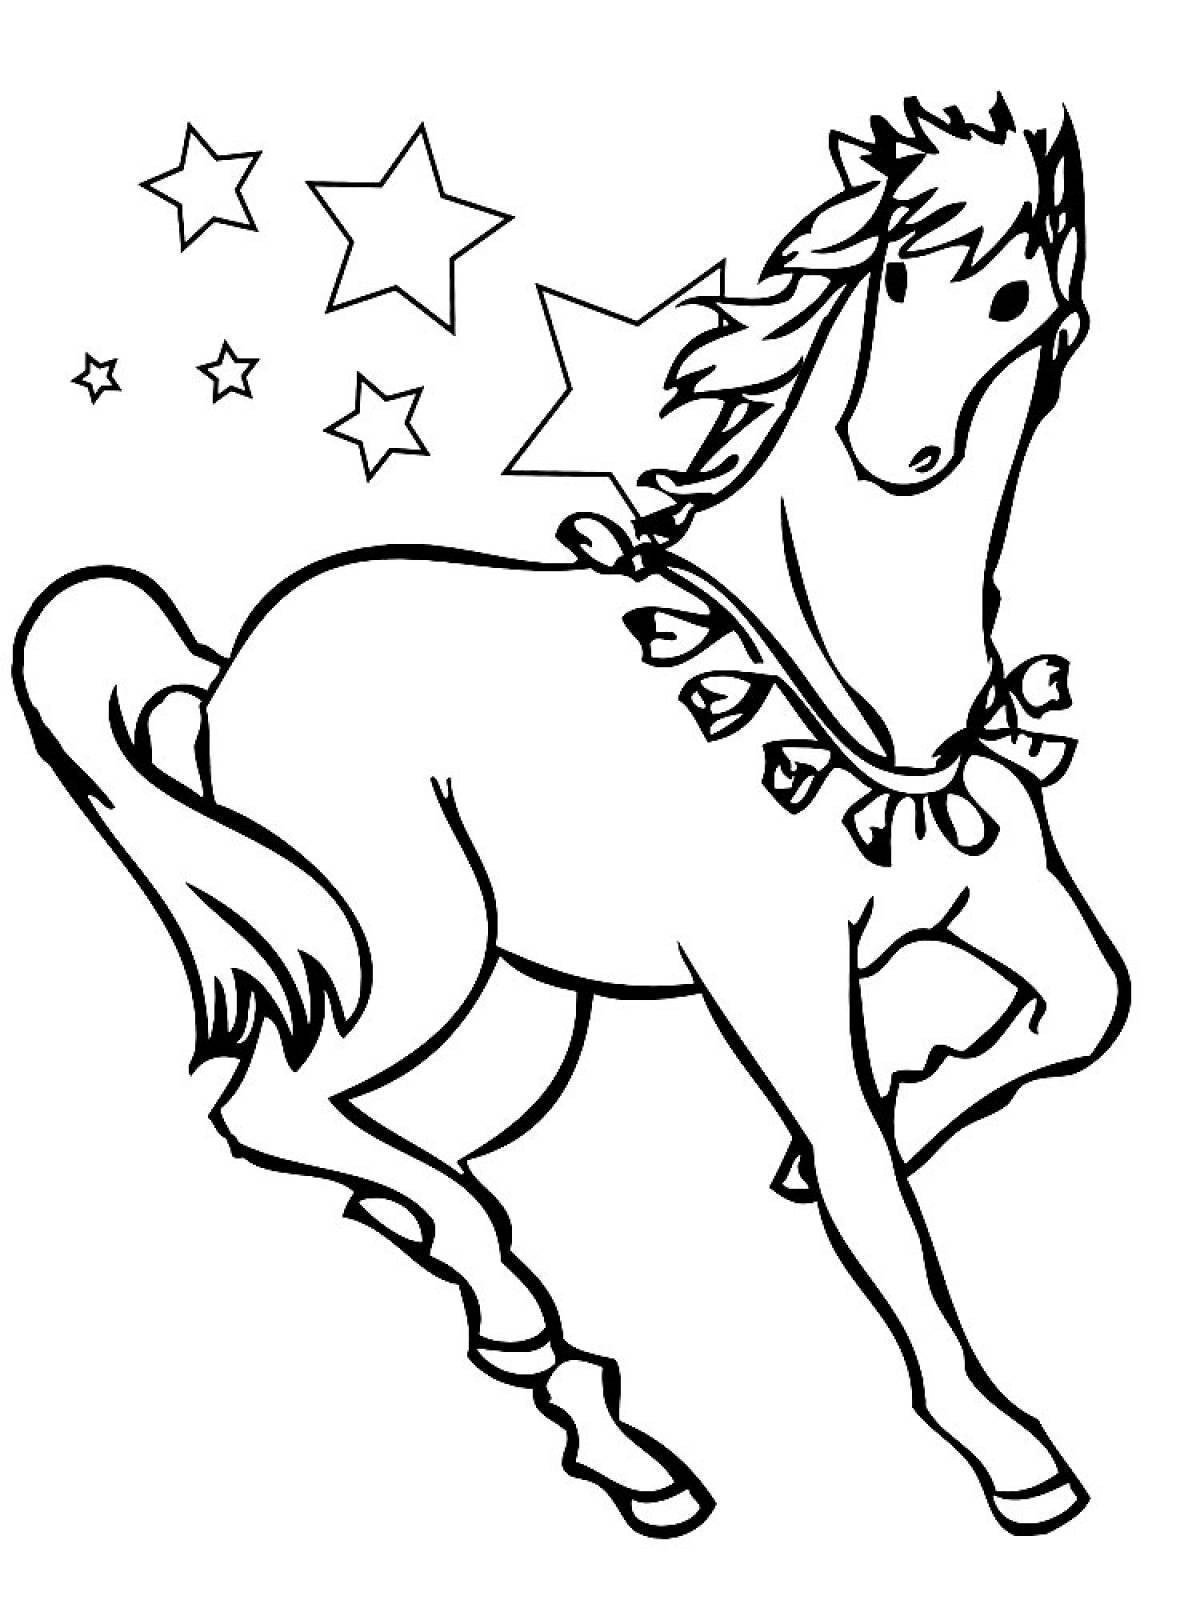 Раскрасить лошадку. Раскраска. Лошадка. Раскраска конь. Раскраски лошадки для девочек. Новогодняя лошадка раскраска.